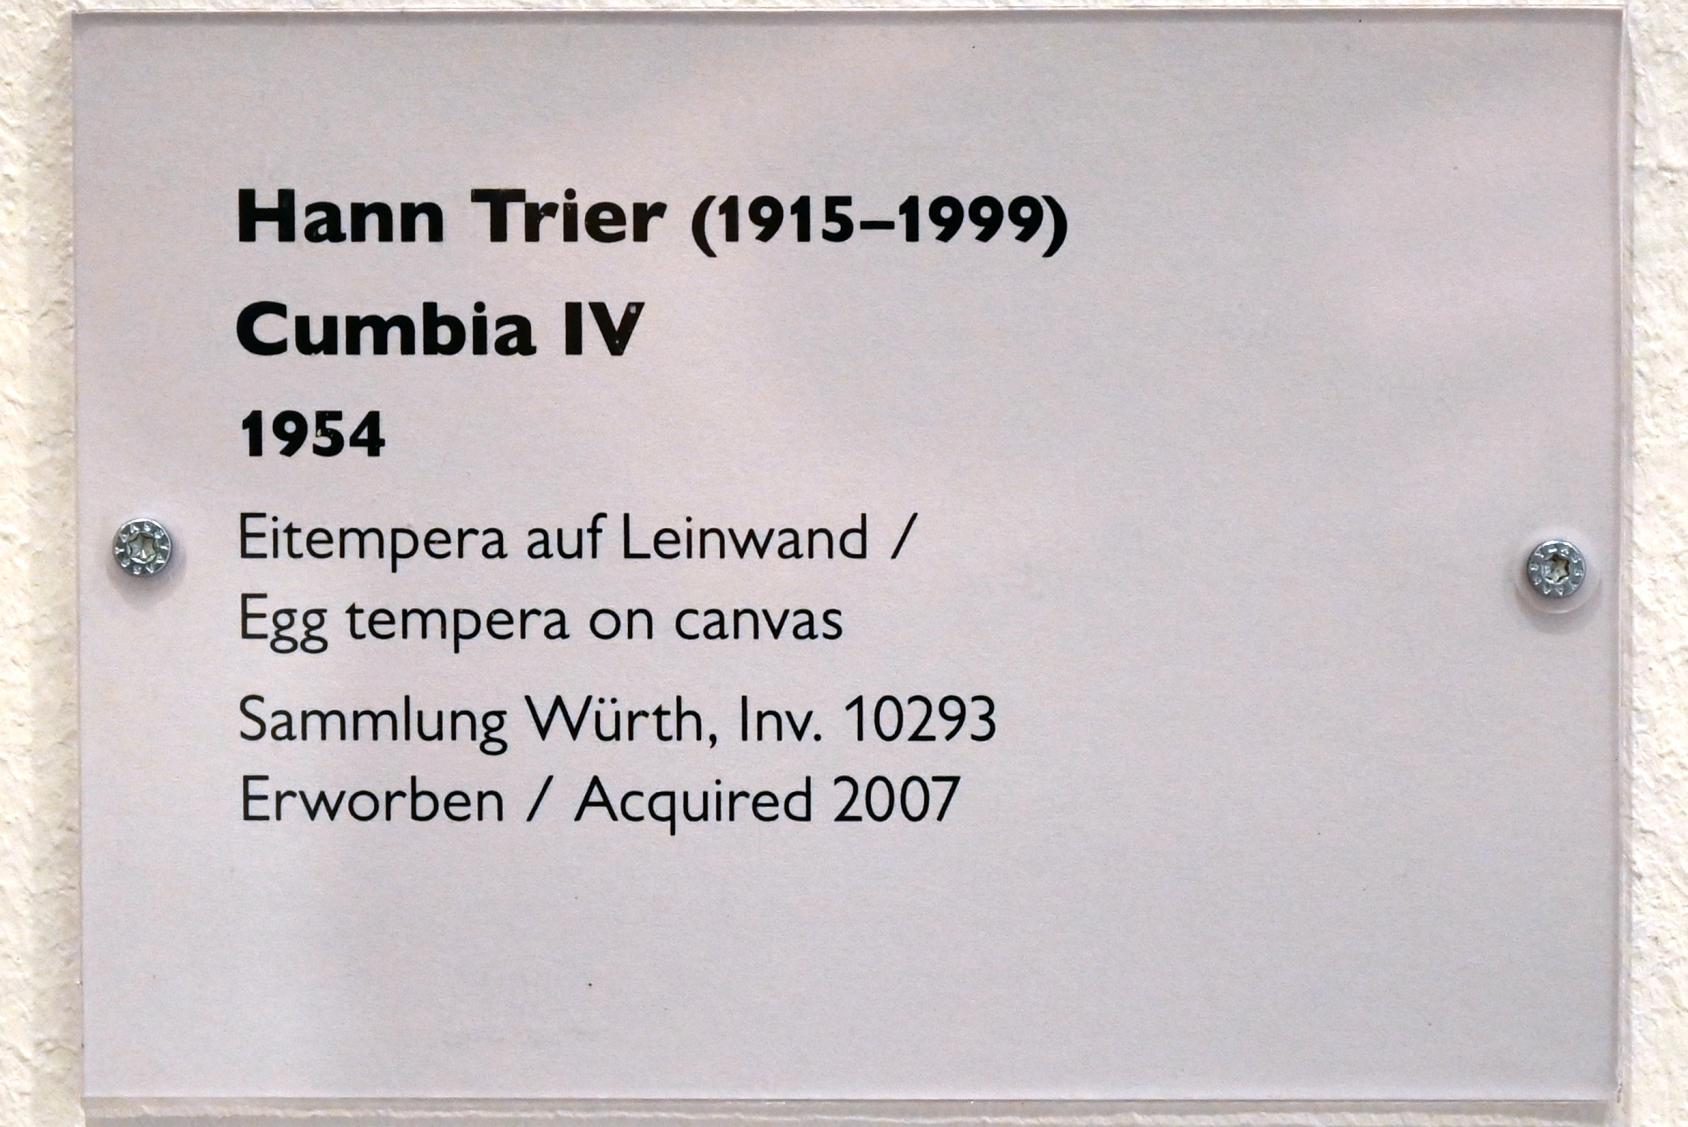 Hann Trier (1954), Cumbia IV, Schwäbisch Hall, Kunsthalle Würth, Ausstellung "Sport, Spaß und Spiel" vom 13.12.2021 - 26.02.2023, Untergeschoß, 1954, Bild 2/2